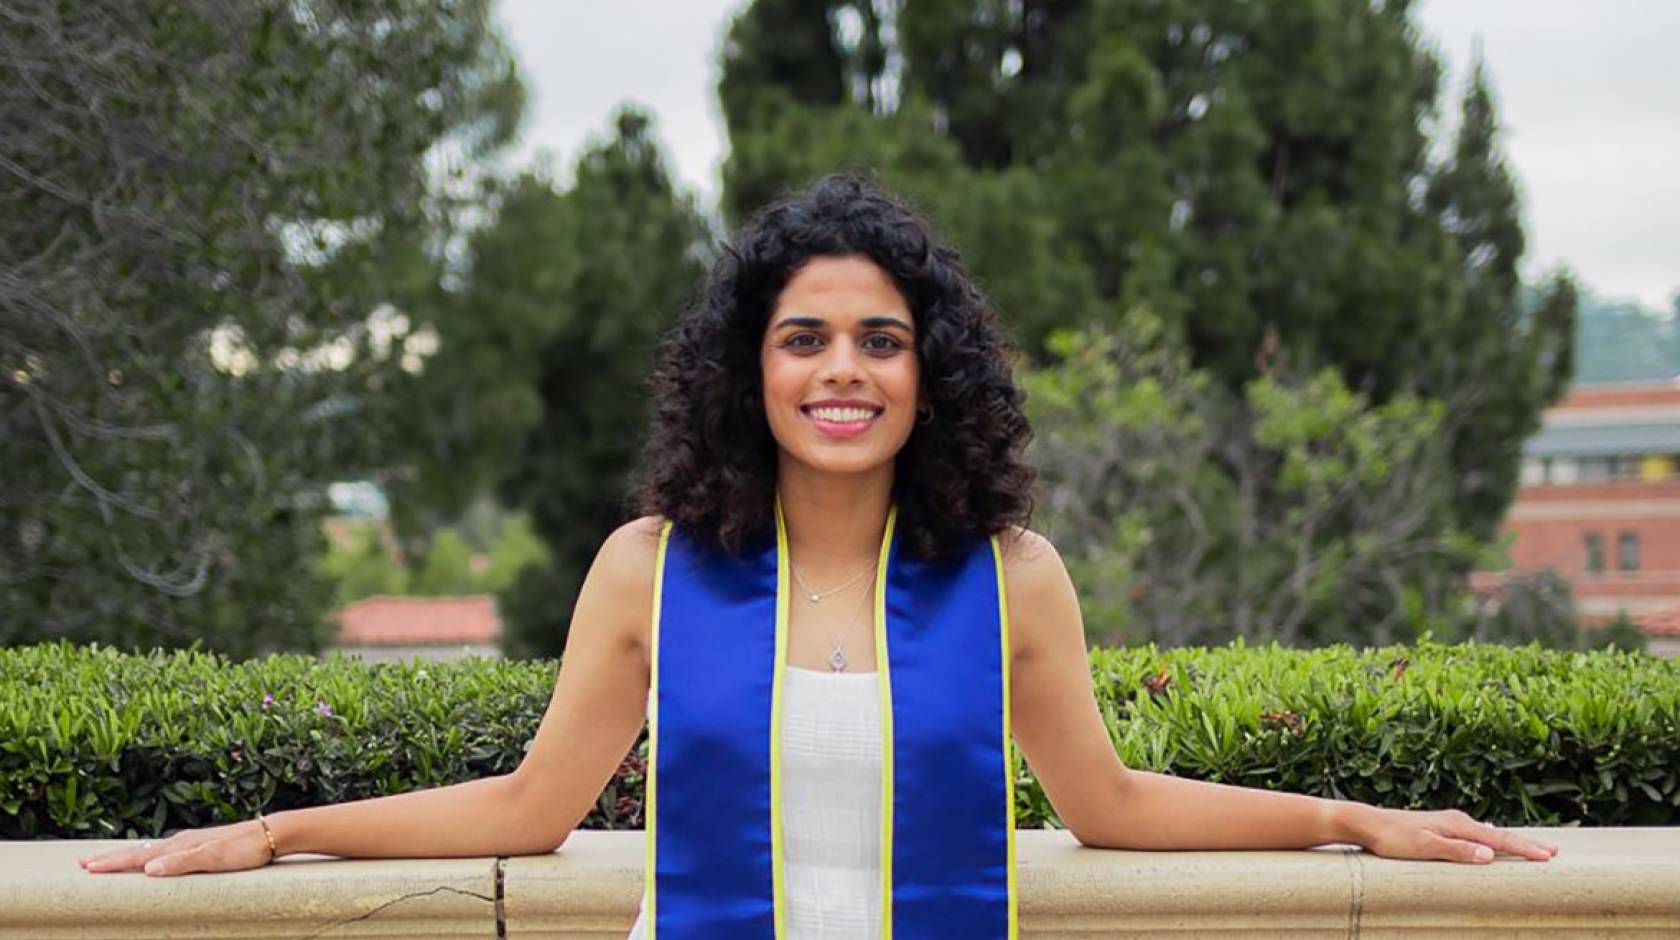 Meera Varma, at her UCLA graduation